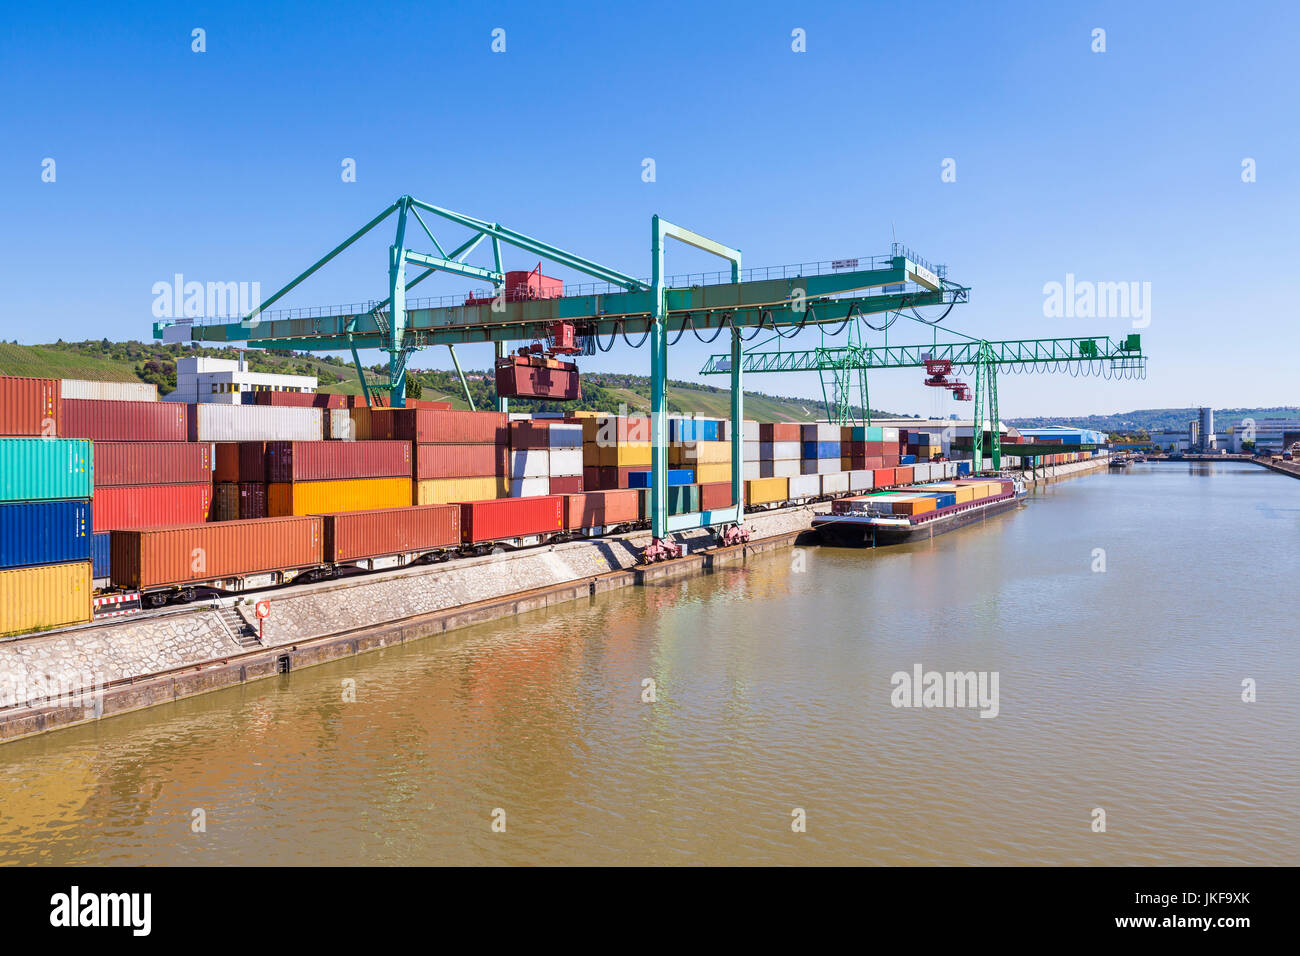 Deutschland, Baden-Württemberg, Stuttgart, Neckar, Neckarhafen, Containerhafen, Hafen, Containerschiff, Schiff, Beladung, Containerterminal, Container Stock Photo